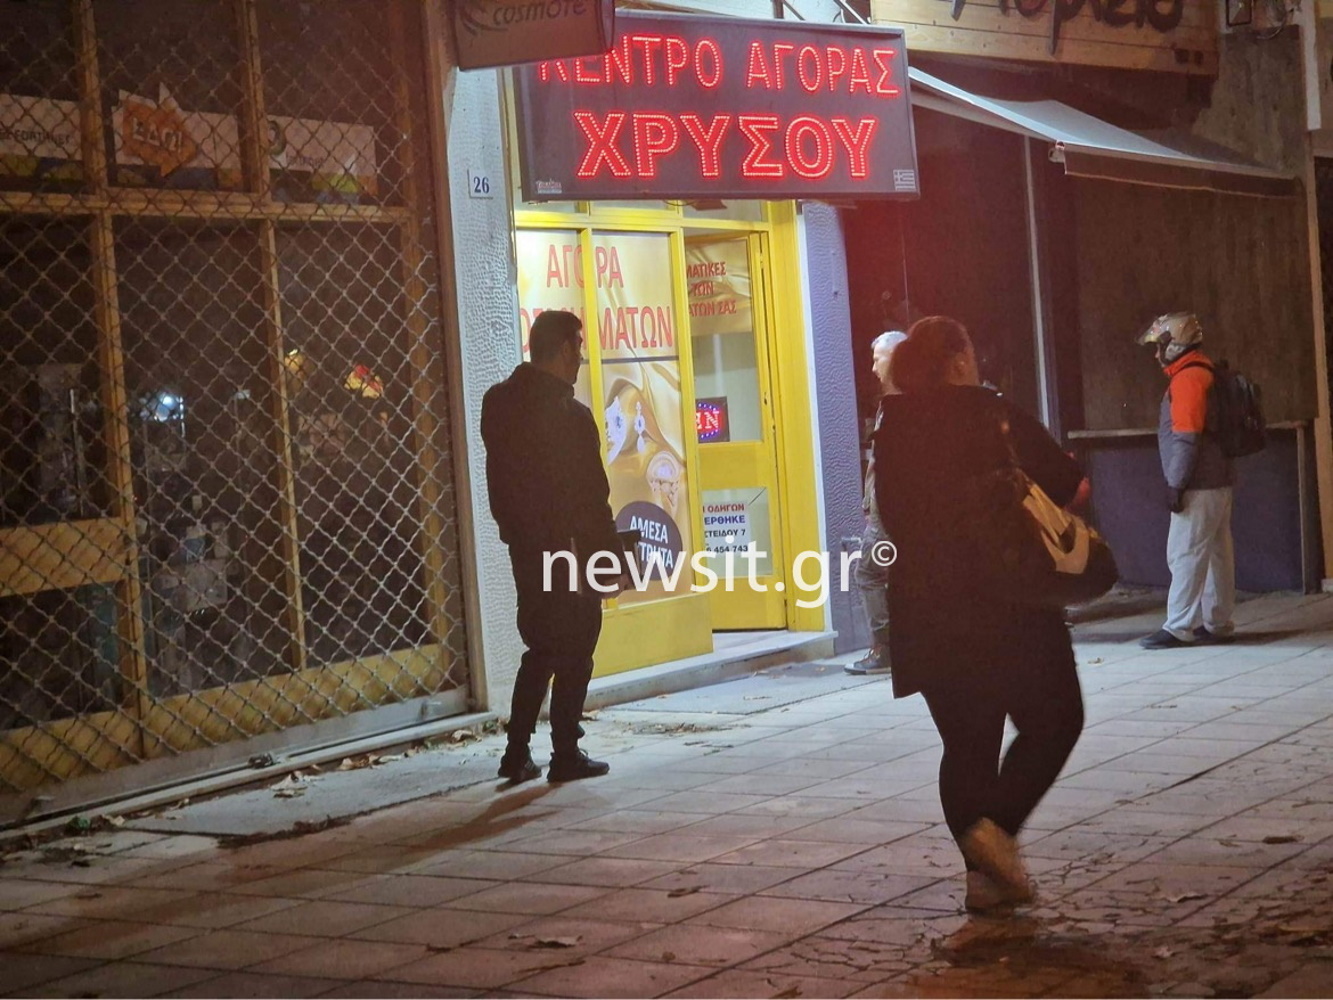 Θεσσαλονίκη: Μπούκαραν με πιστόλια σε κατάστημα αγοράς χρυσού και άρπαξαν 2.500 ευρώ